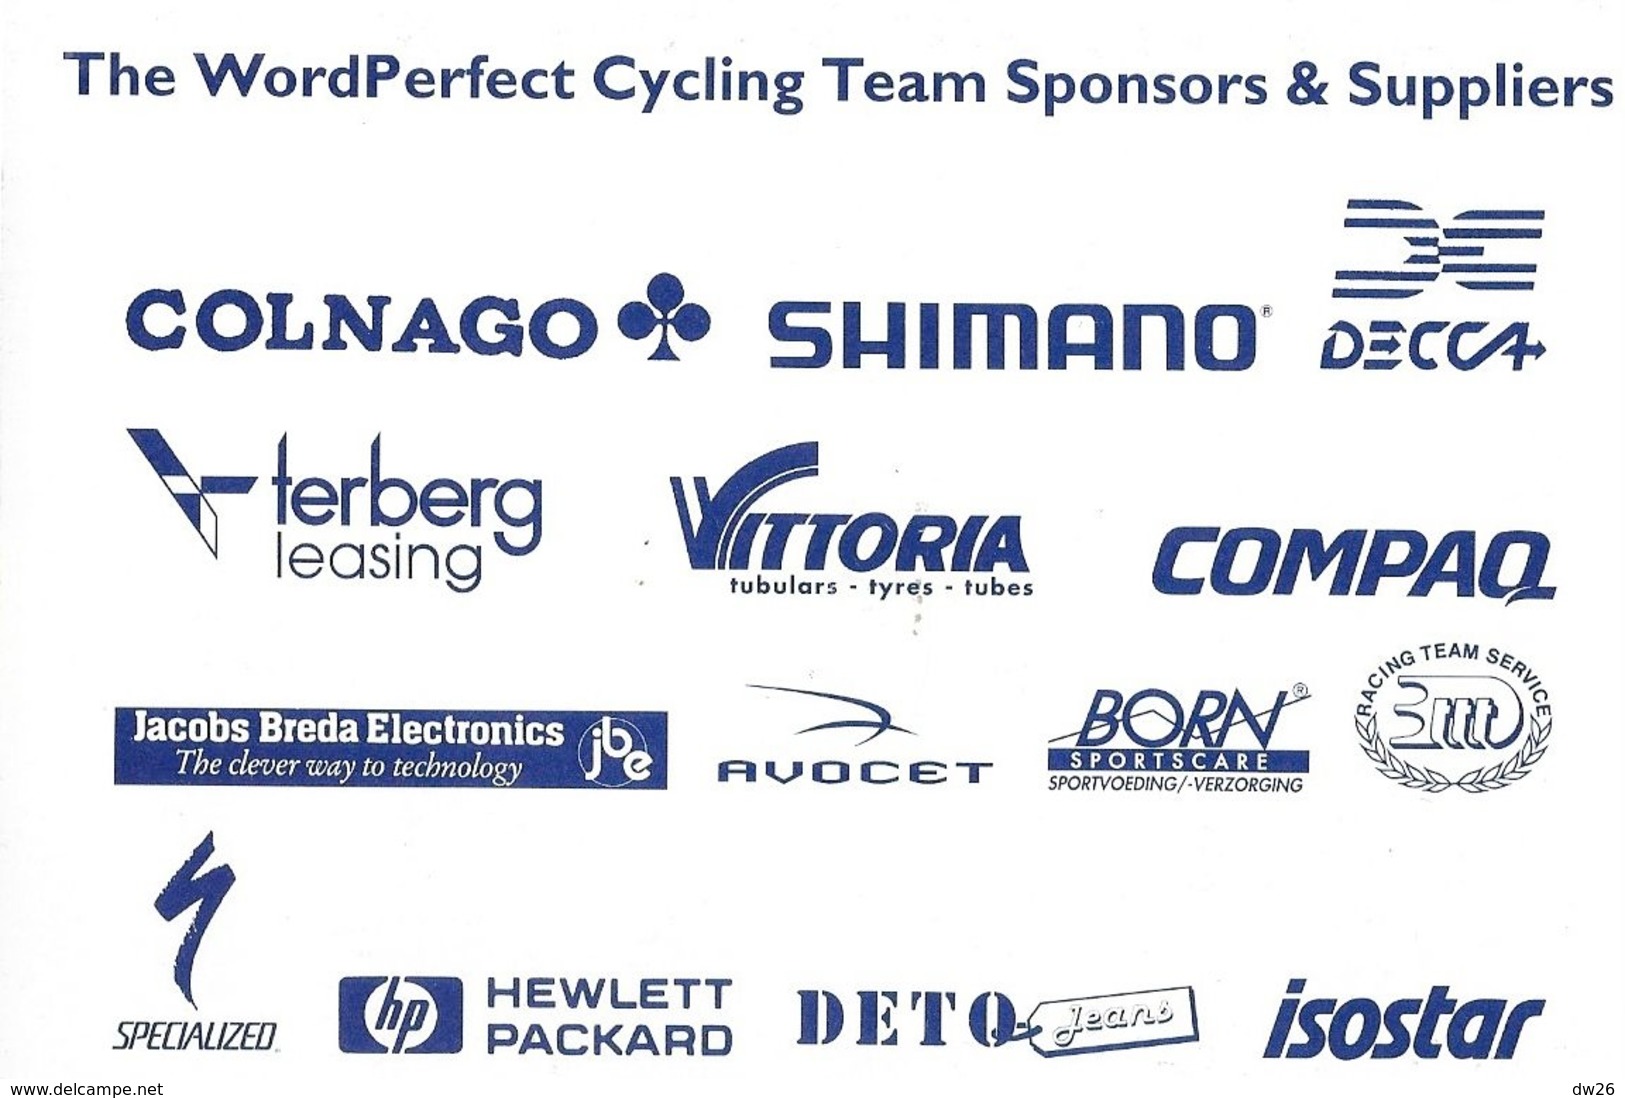 Cycliste: Marty Jemison, Equipe De Cyclisme Professionnel: Team Wordperfect Software, Etats Unis 1993 - Sport